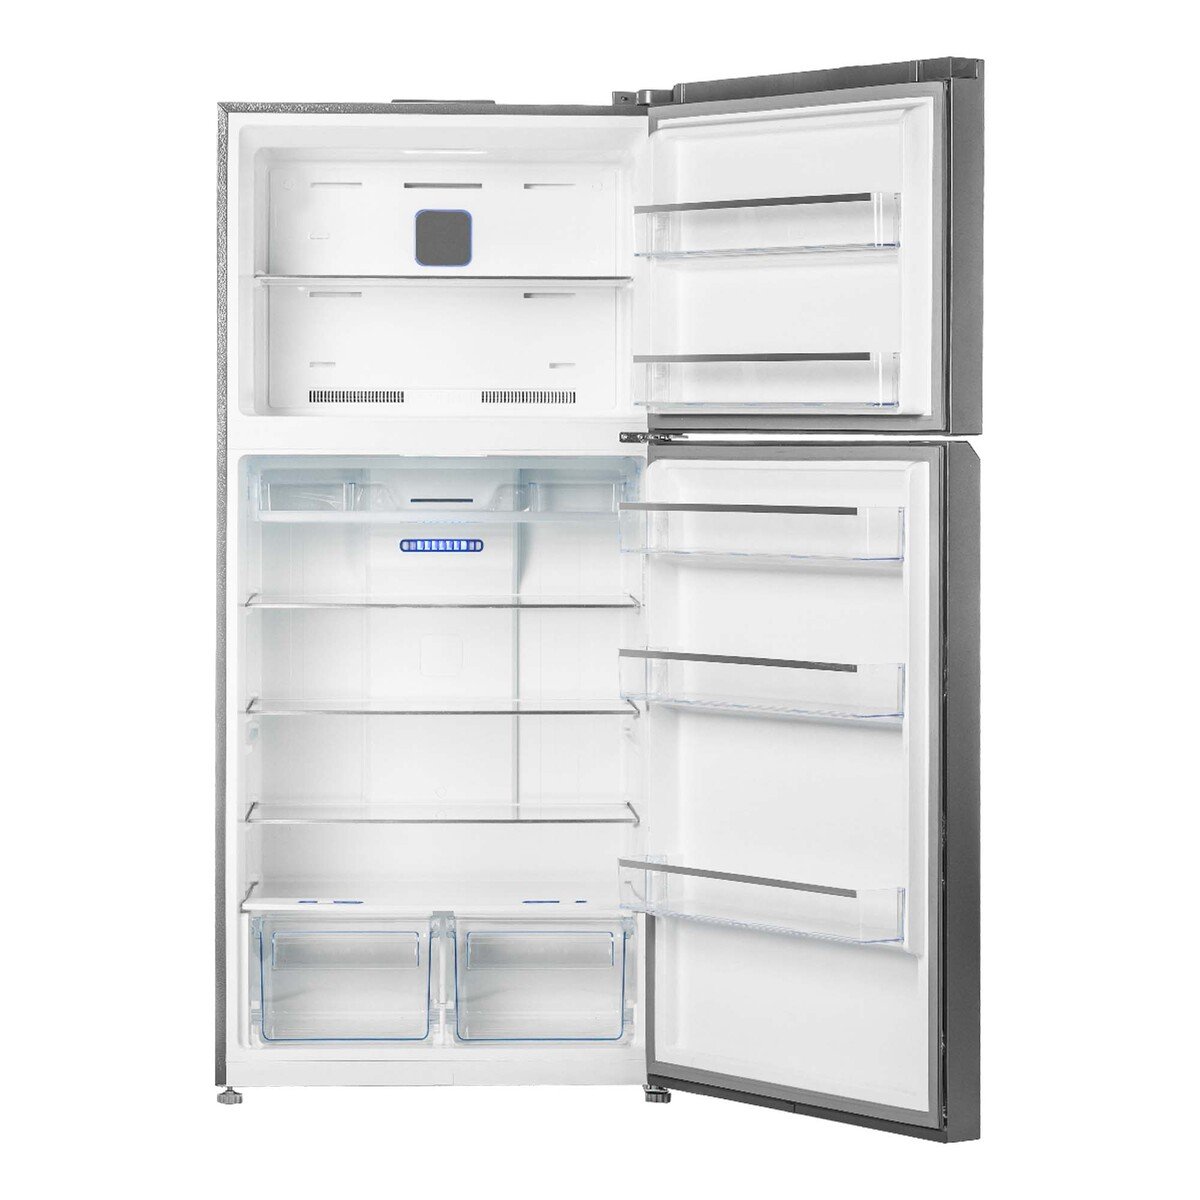 Terim Double Door Refrigerator TERR700SS 700LTR